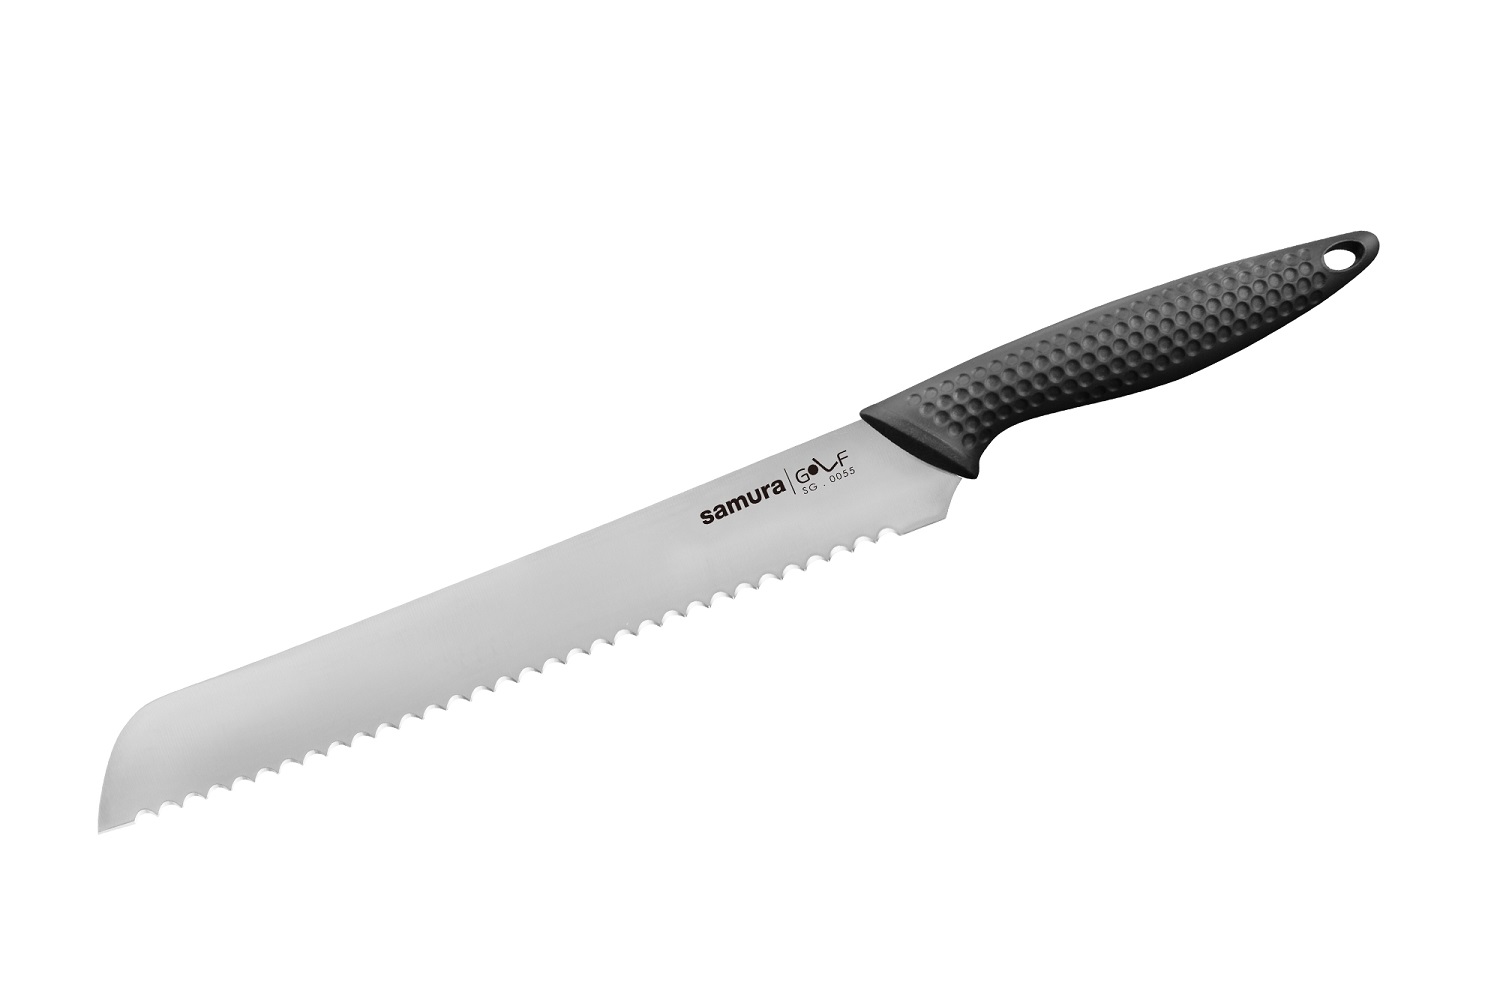 Нож Samura для хлеба Golf, 23 см, AUS-8 цветной безопасный детский кухонный нож нейлоновые ножи шеф повара ножи для фруктов хлеба торта салата салат ножи пластиковый кухонны